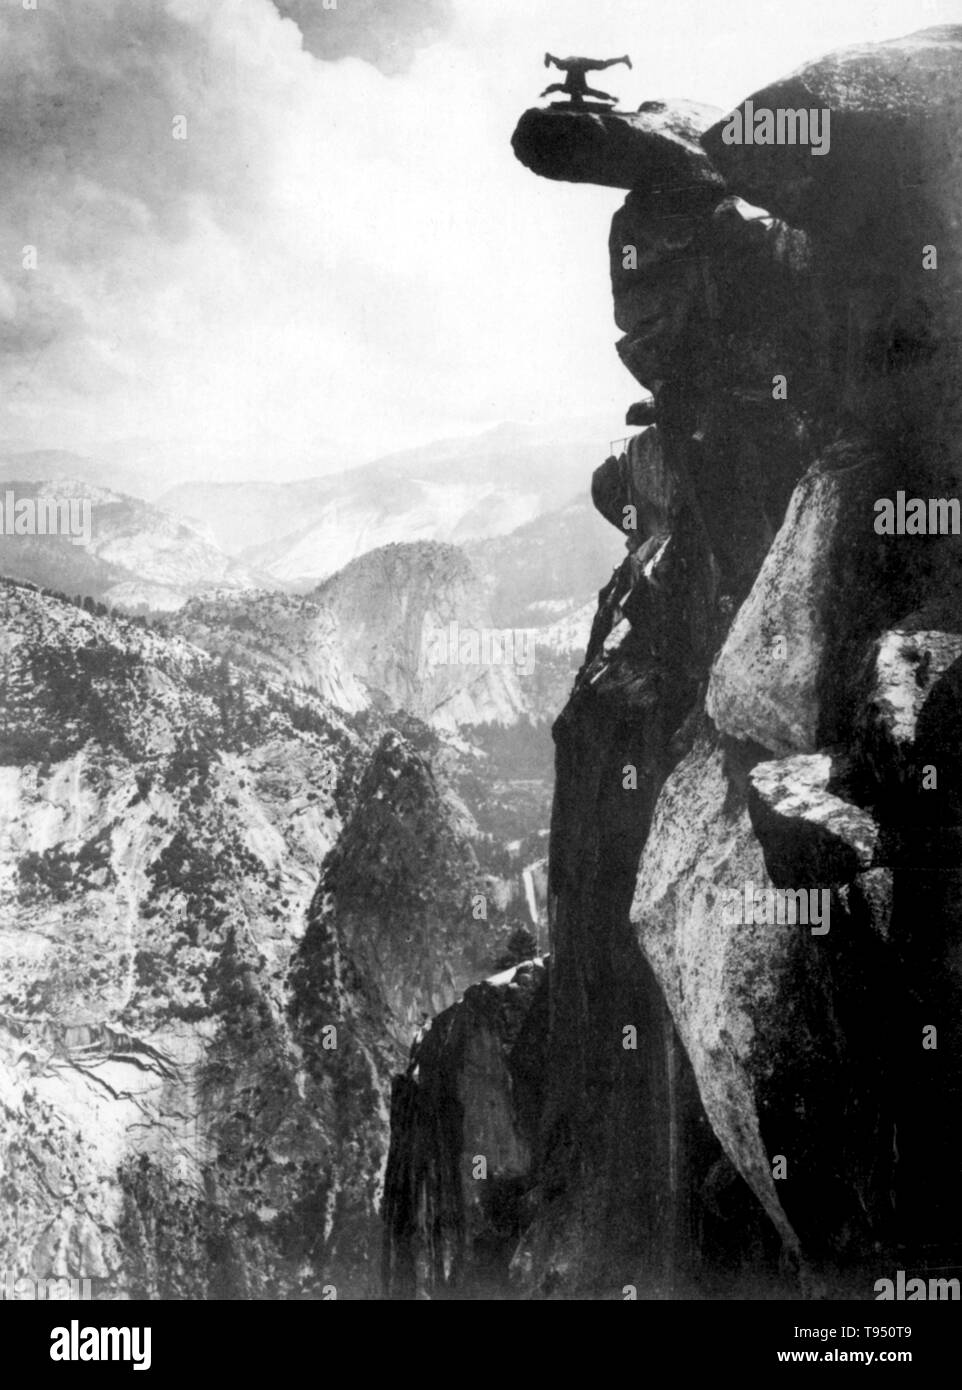 Giovane uomo equilibrato sul capo in cima al ghiacciaio Punto. Glacier Point è un punto di vista sopra la valle di Yosemite in California, Stati Uniti. Si trova sulla parete sud della valle di Yosemite, ad un'altitudine di 7,214 piedi. Il punto offre una vista superba di diversi di Yosemite National Park sono ben conosciuti segni distintivi della città tra cui il Parco Nazionale di Yosemite Valley, Yosemite Falls, Half Dome, caduta primaverile, Nevada Fall, e nuvole di riposo. 1890s Foto Stock